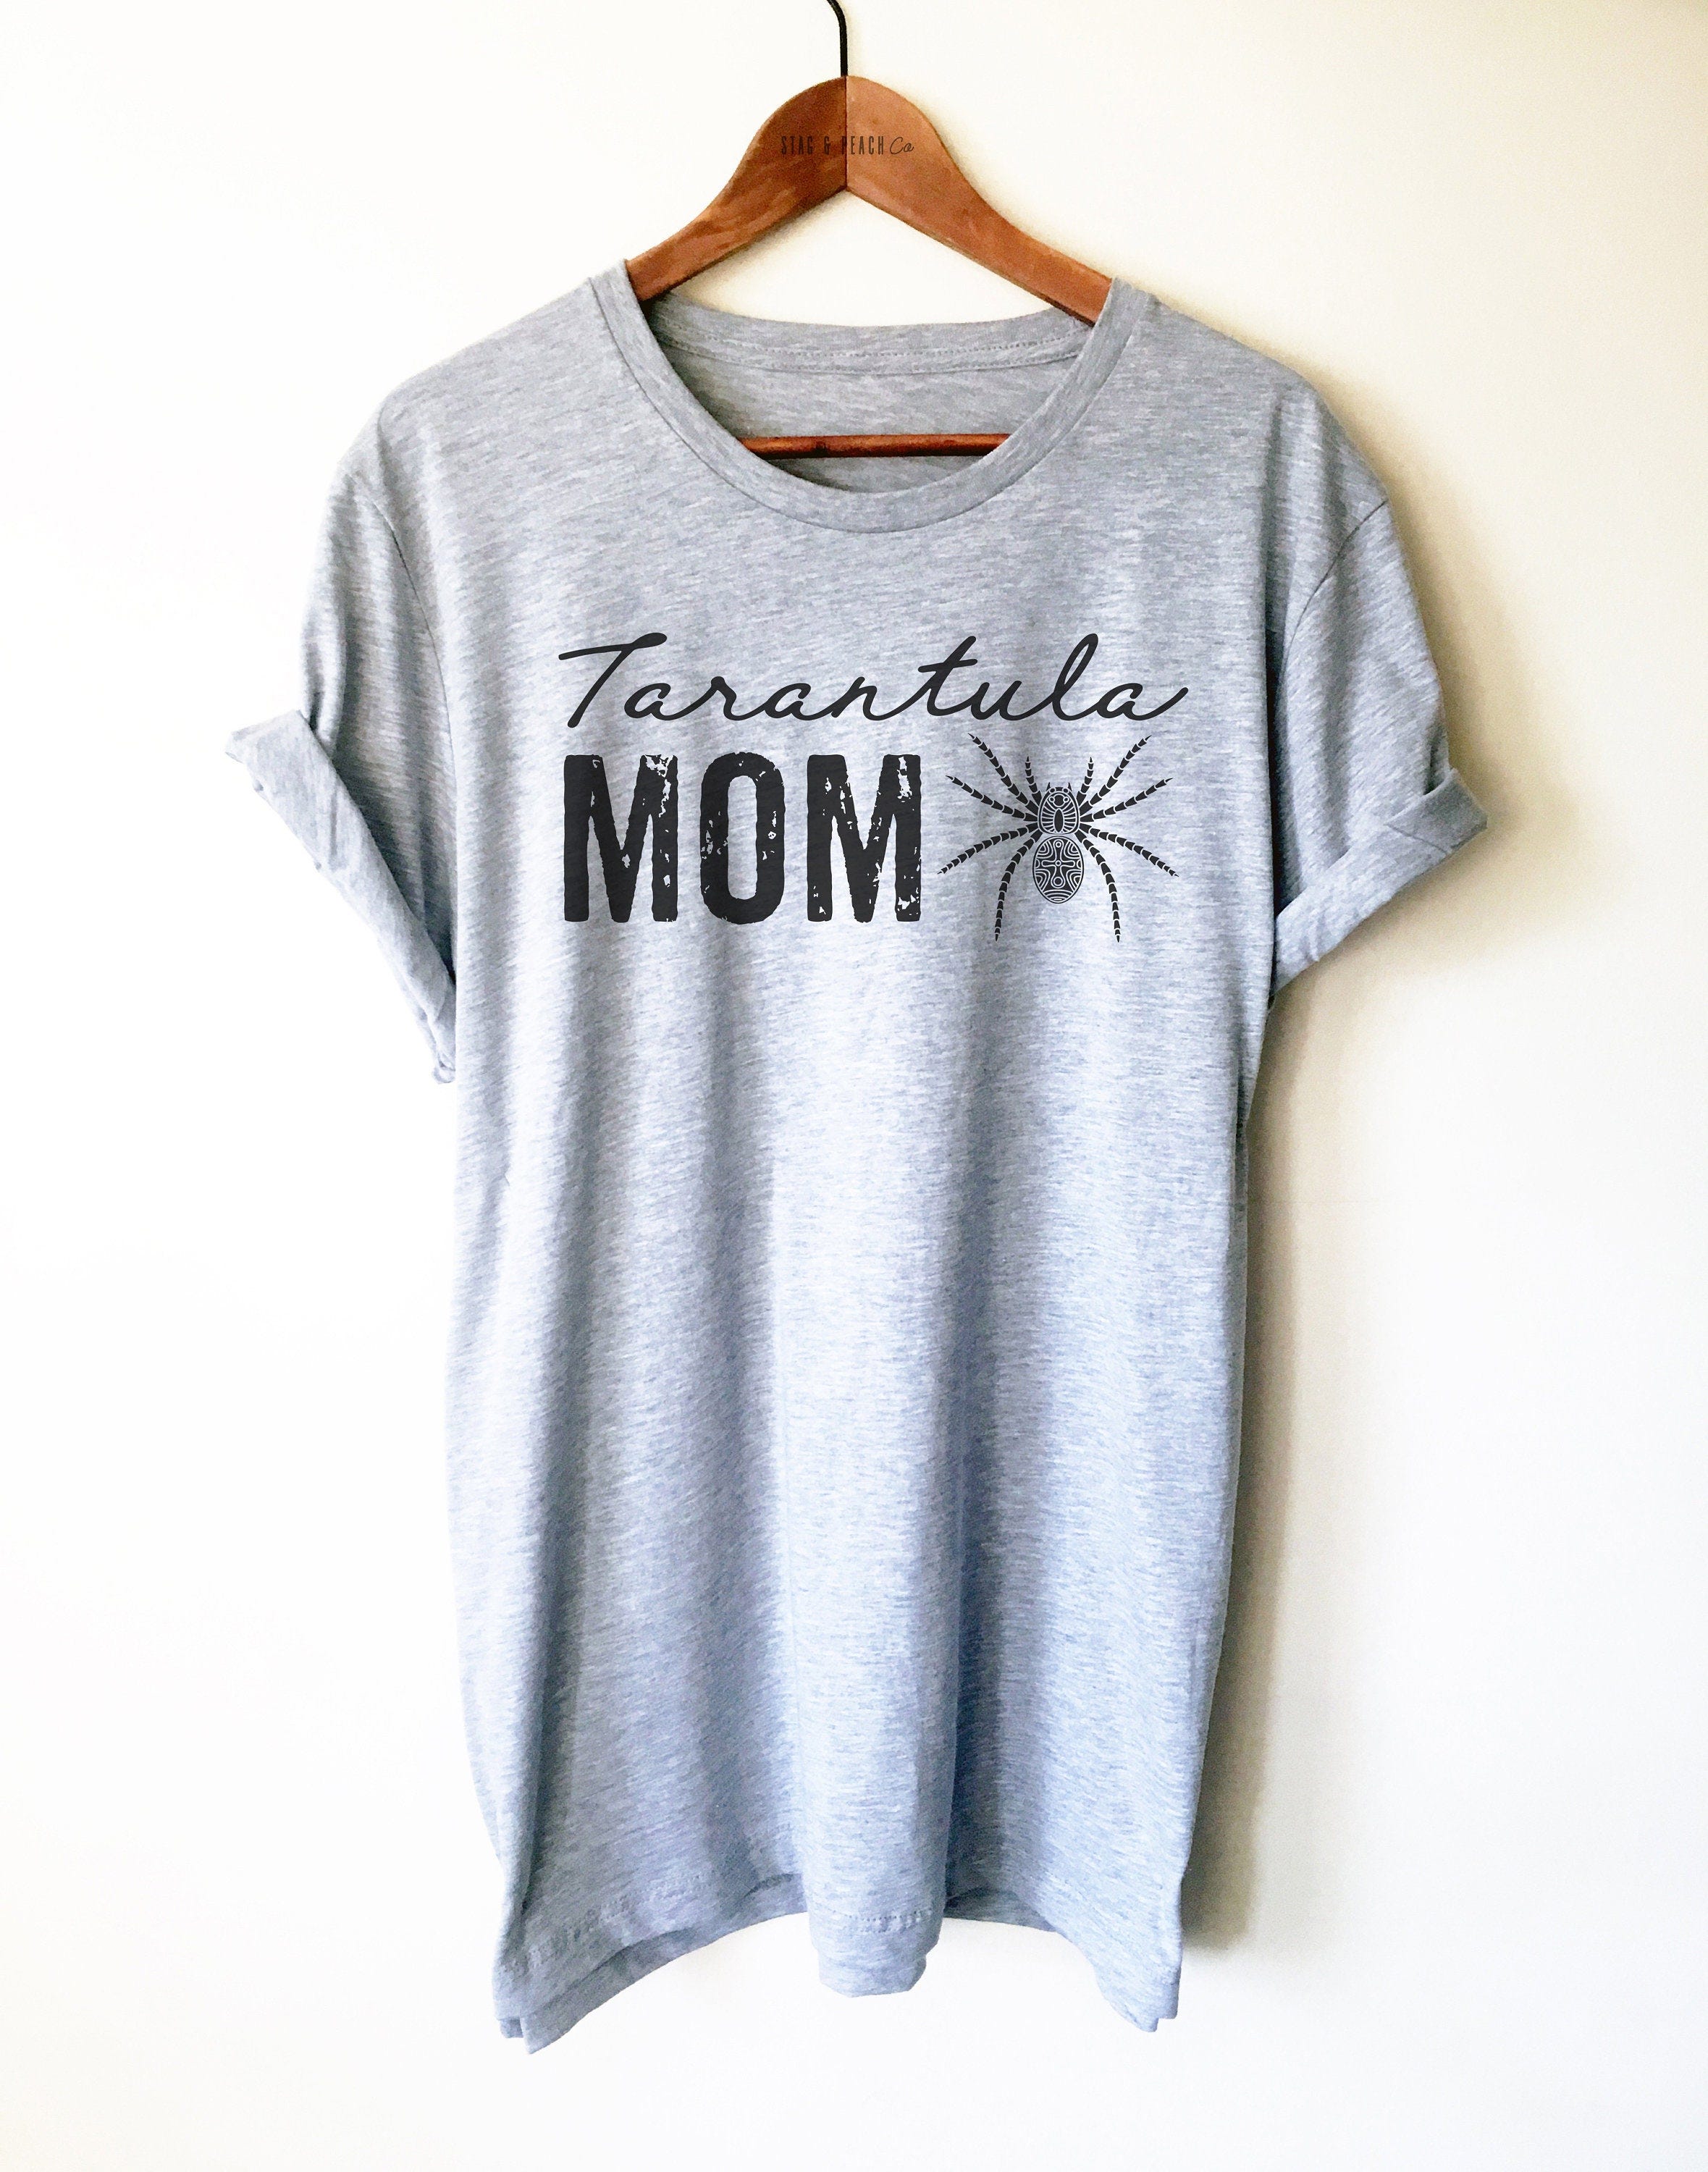 Tarantula Mom Shirt/Tank Top/Hoodie - Tarantula Mom Gift, Tarantula Owner Shirt, Arachnid Gifts, Tarantula Spider Shirt, Funny Spider Shirt,